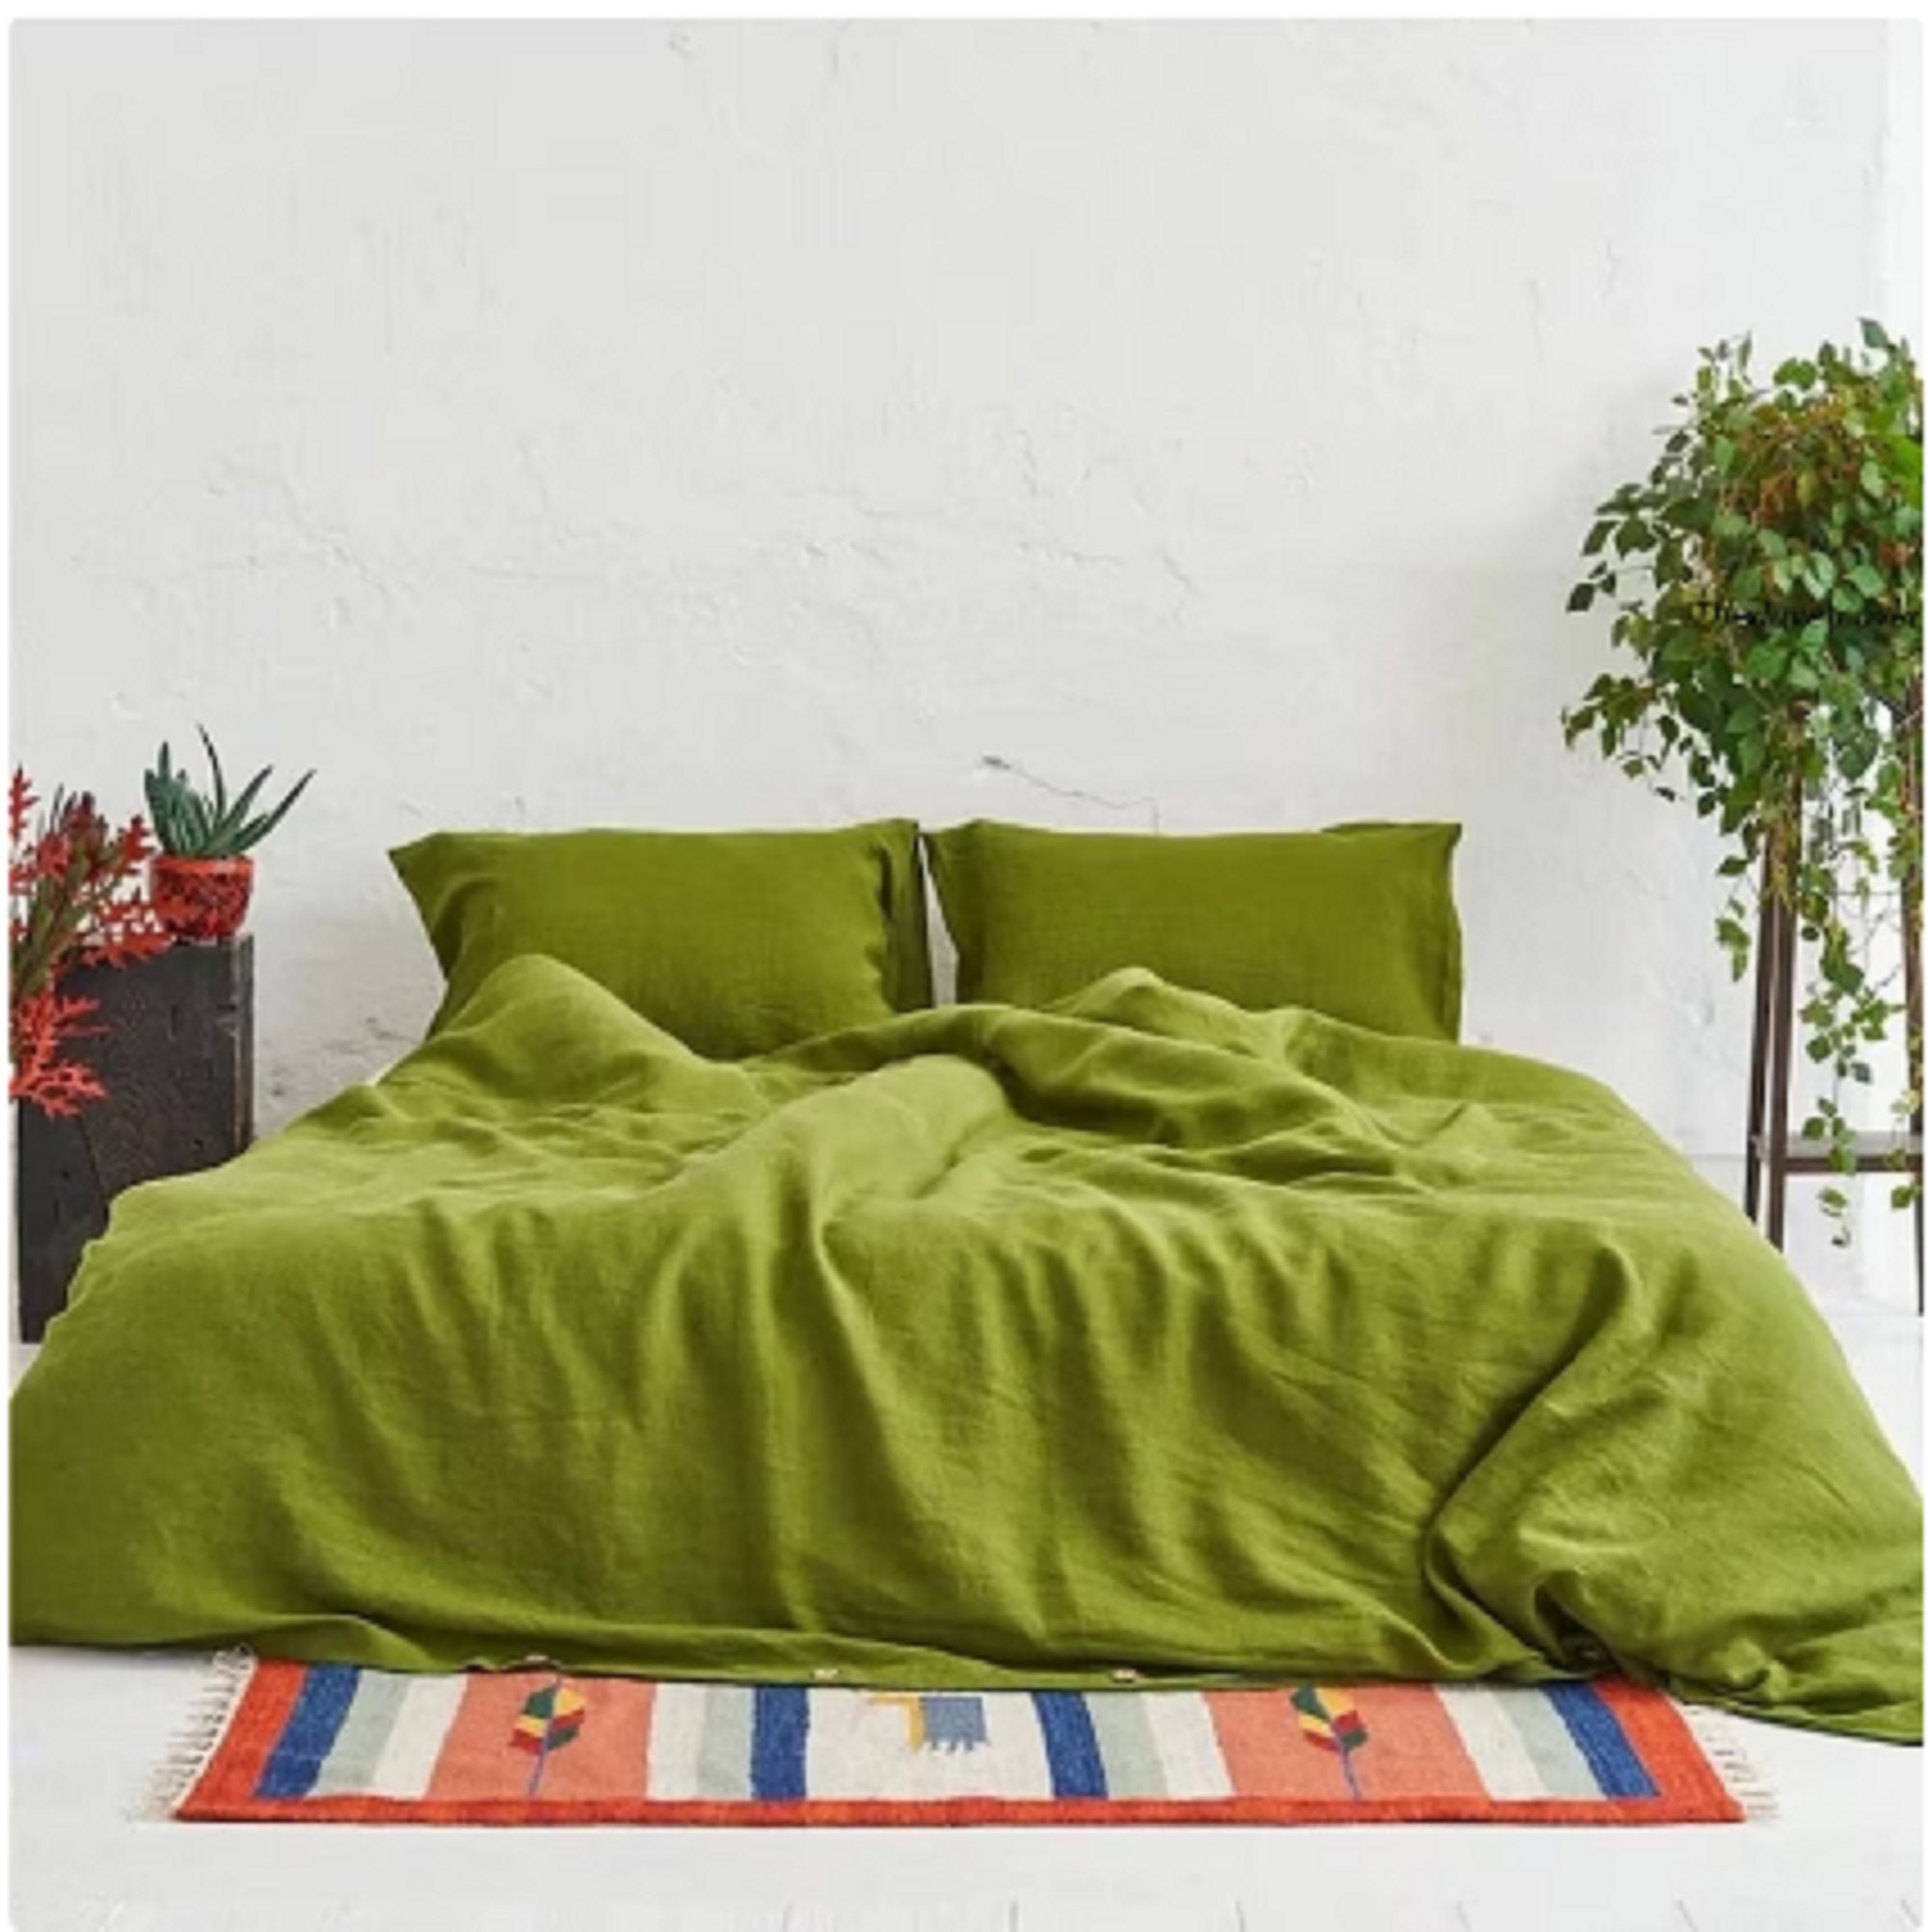 Moss Green Linen Bed Sheets Set